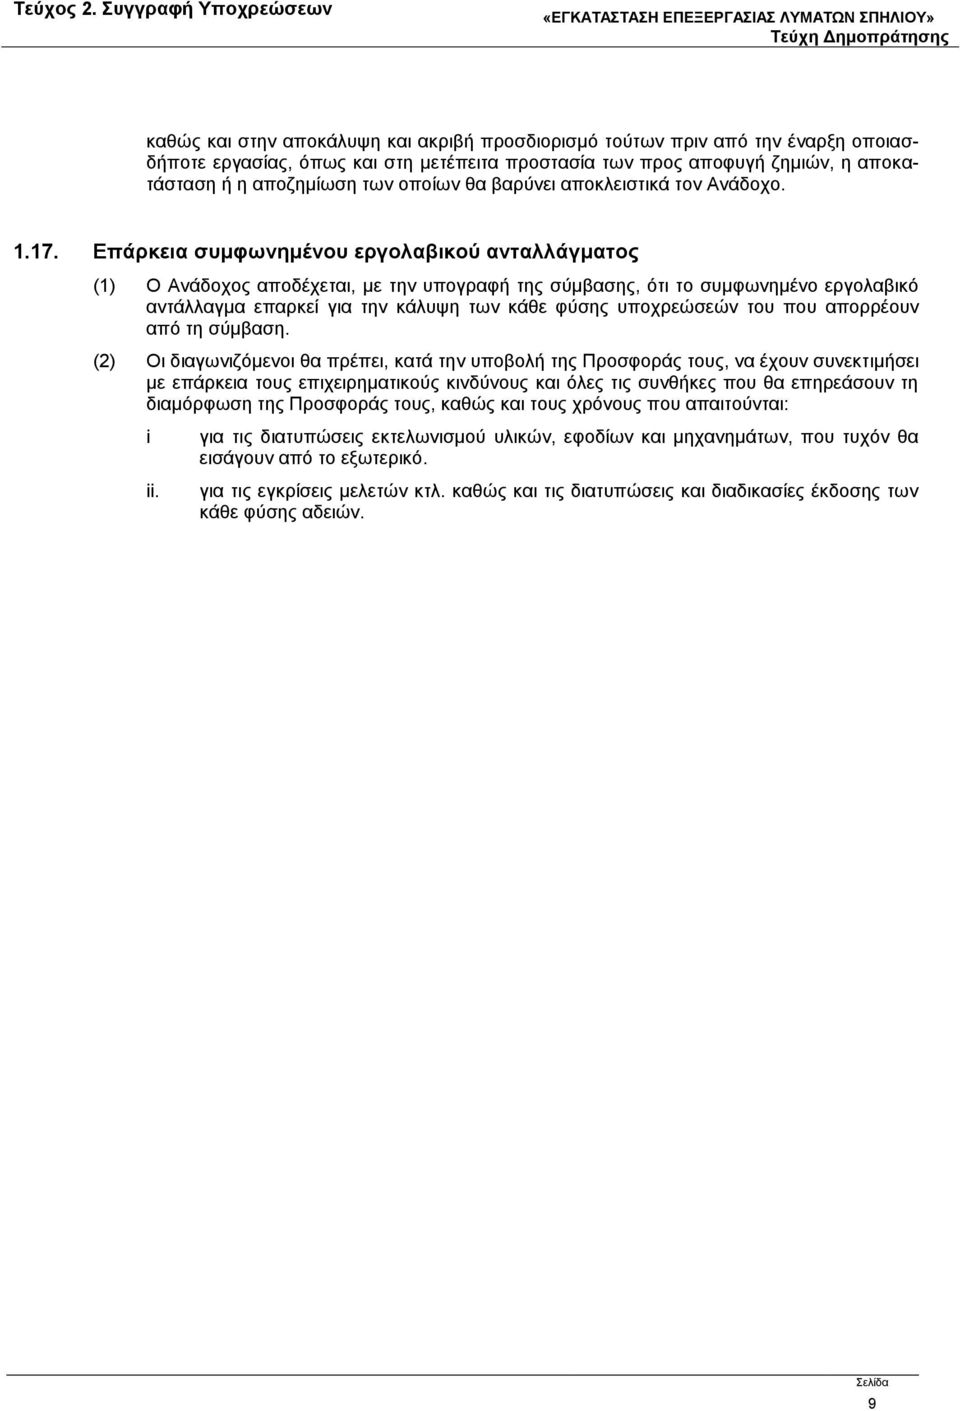 Επάρκεια συμφωνημένου εργολαβικού ανταλλάγματος (1) Ο Ανάδοχος αποδέχεται, με την υπογραφή της σύμβασης, ότι το συμφωνημένο εργολαβικό αντάλλαγμα επαρκεί για την κάλυψη των κάθε φύσης υποχρεώσεών του